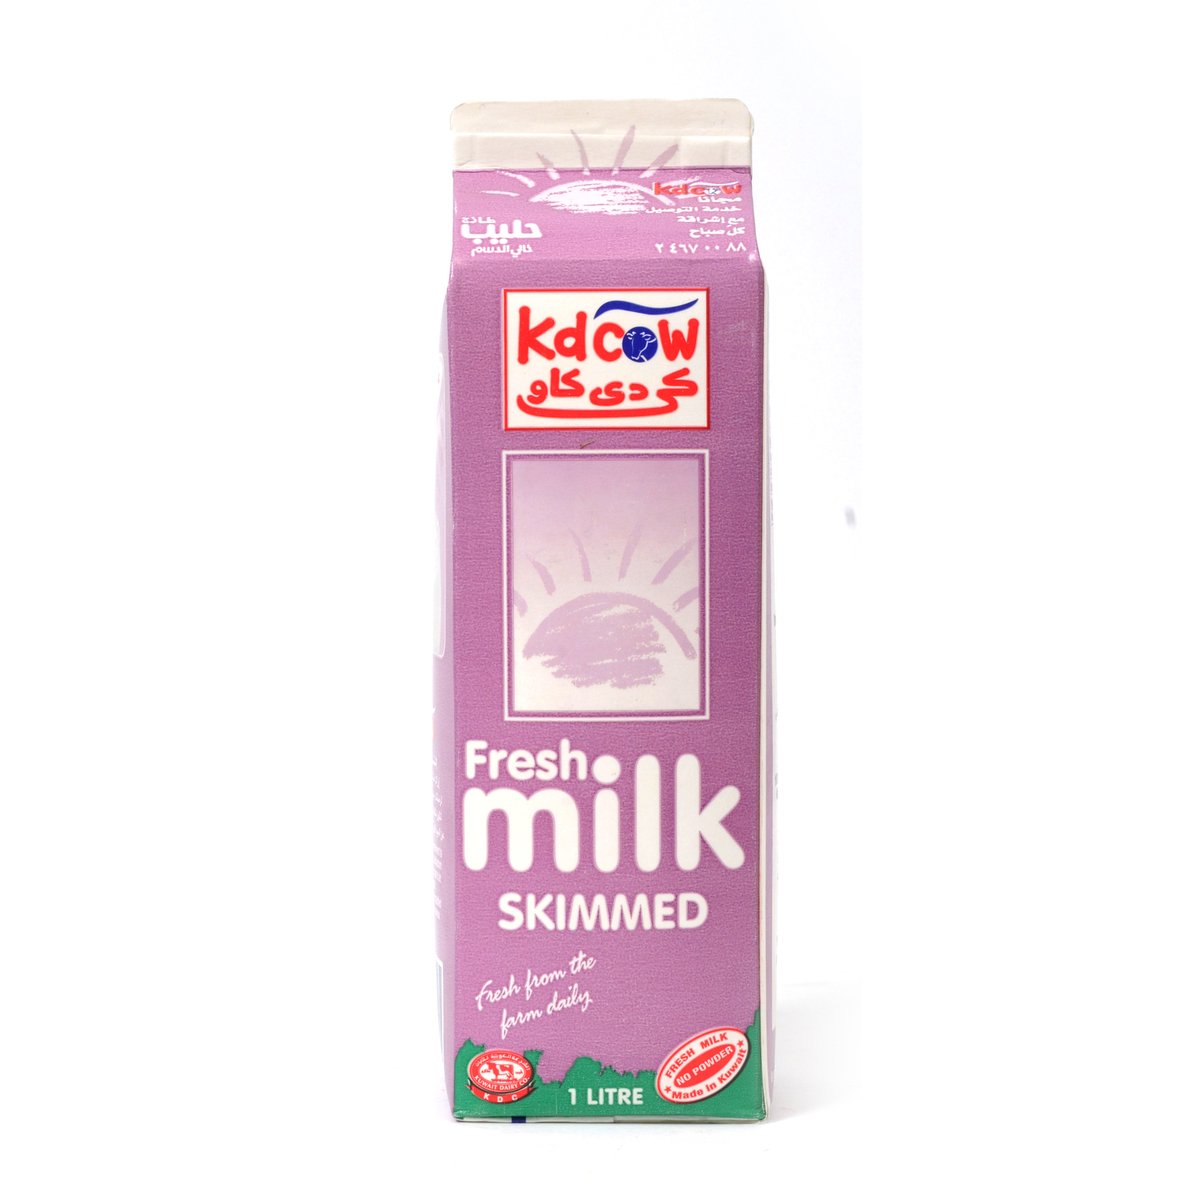 Kdcow Fresh Milk Skimmed 1Litre